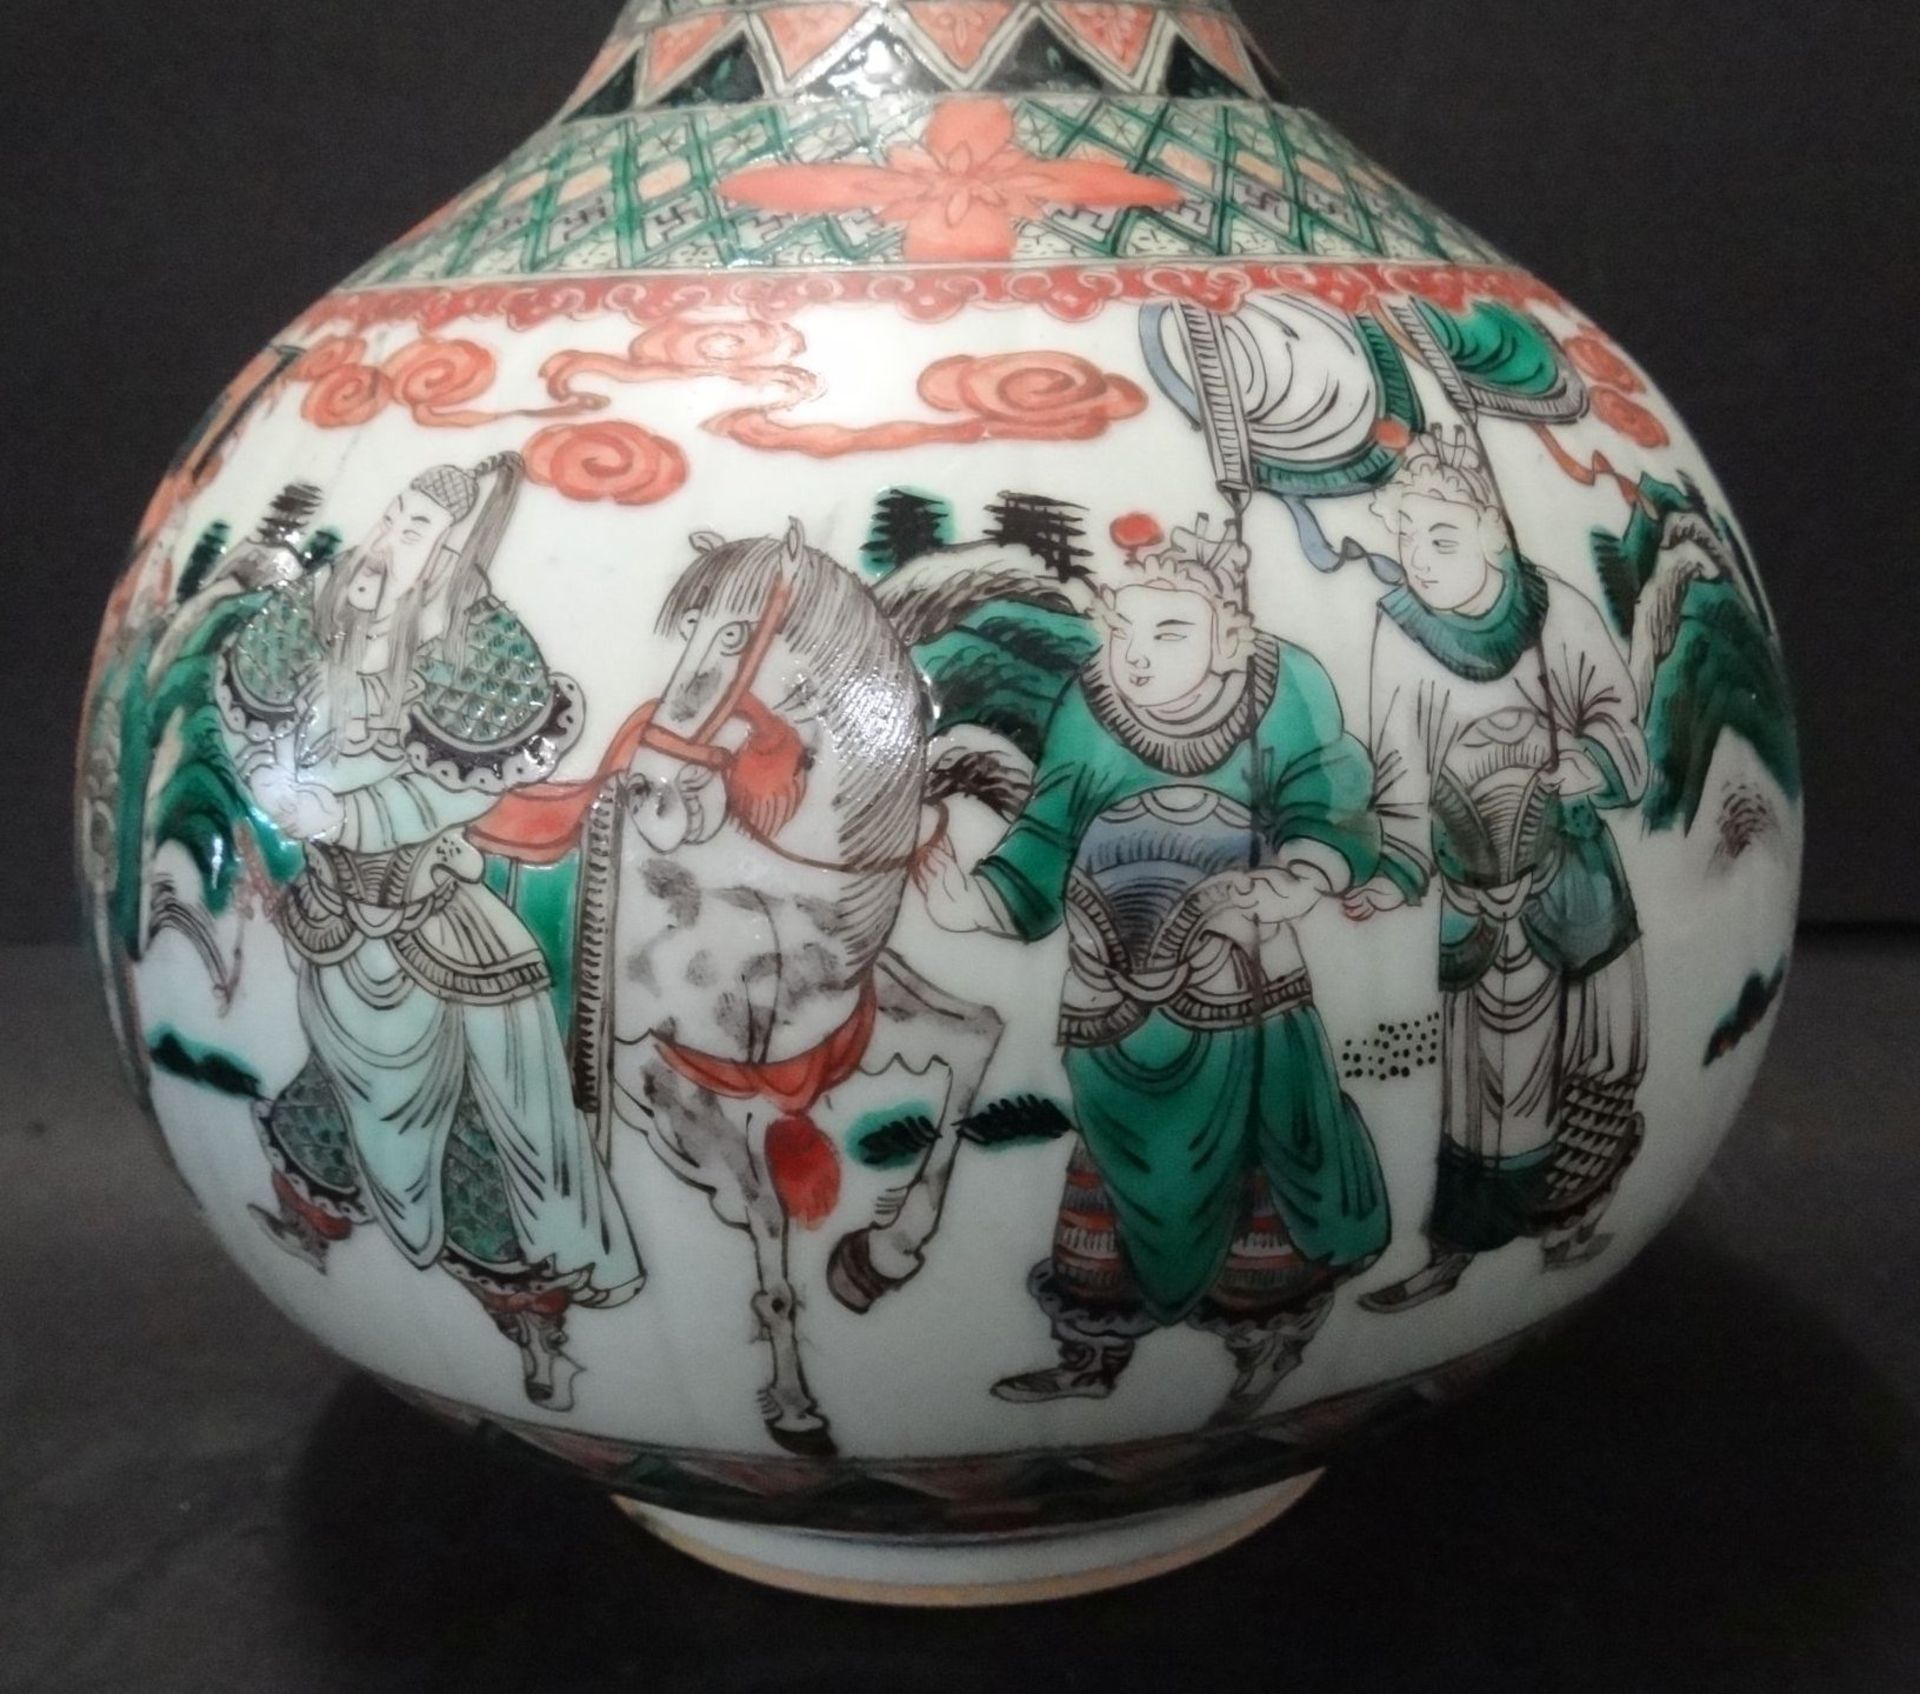 gr. Kürbisvase, China, umlaufend figürliches Dekor, guter Zustand, H-31 cm, D-20"""" - Bild 2 aus 7